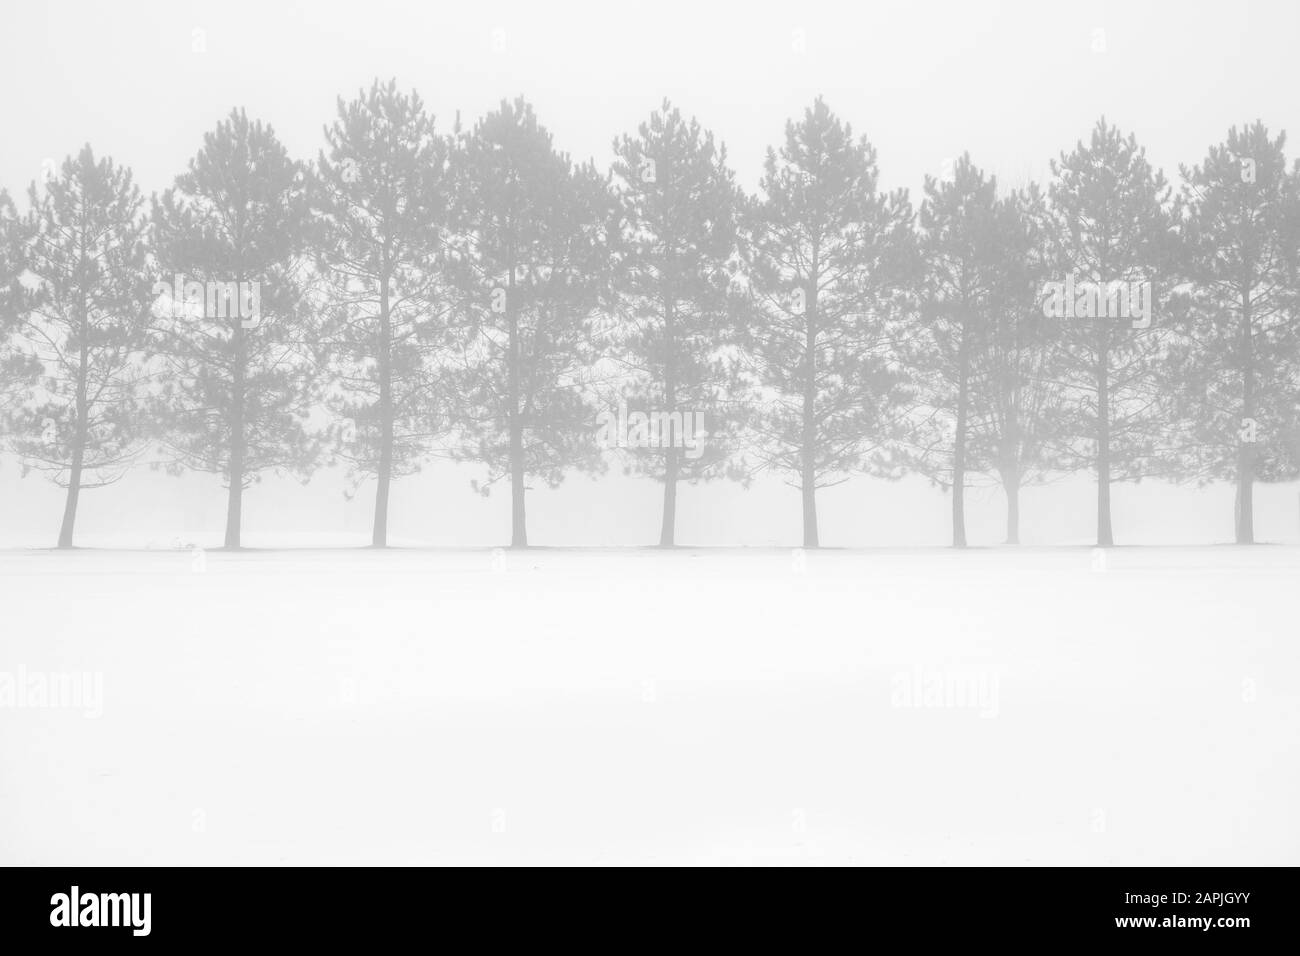 la scène hivernale foggy avec des arbres Banque D'Images